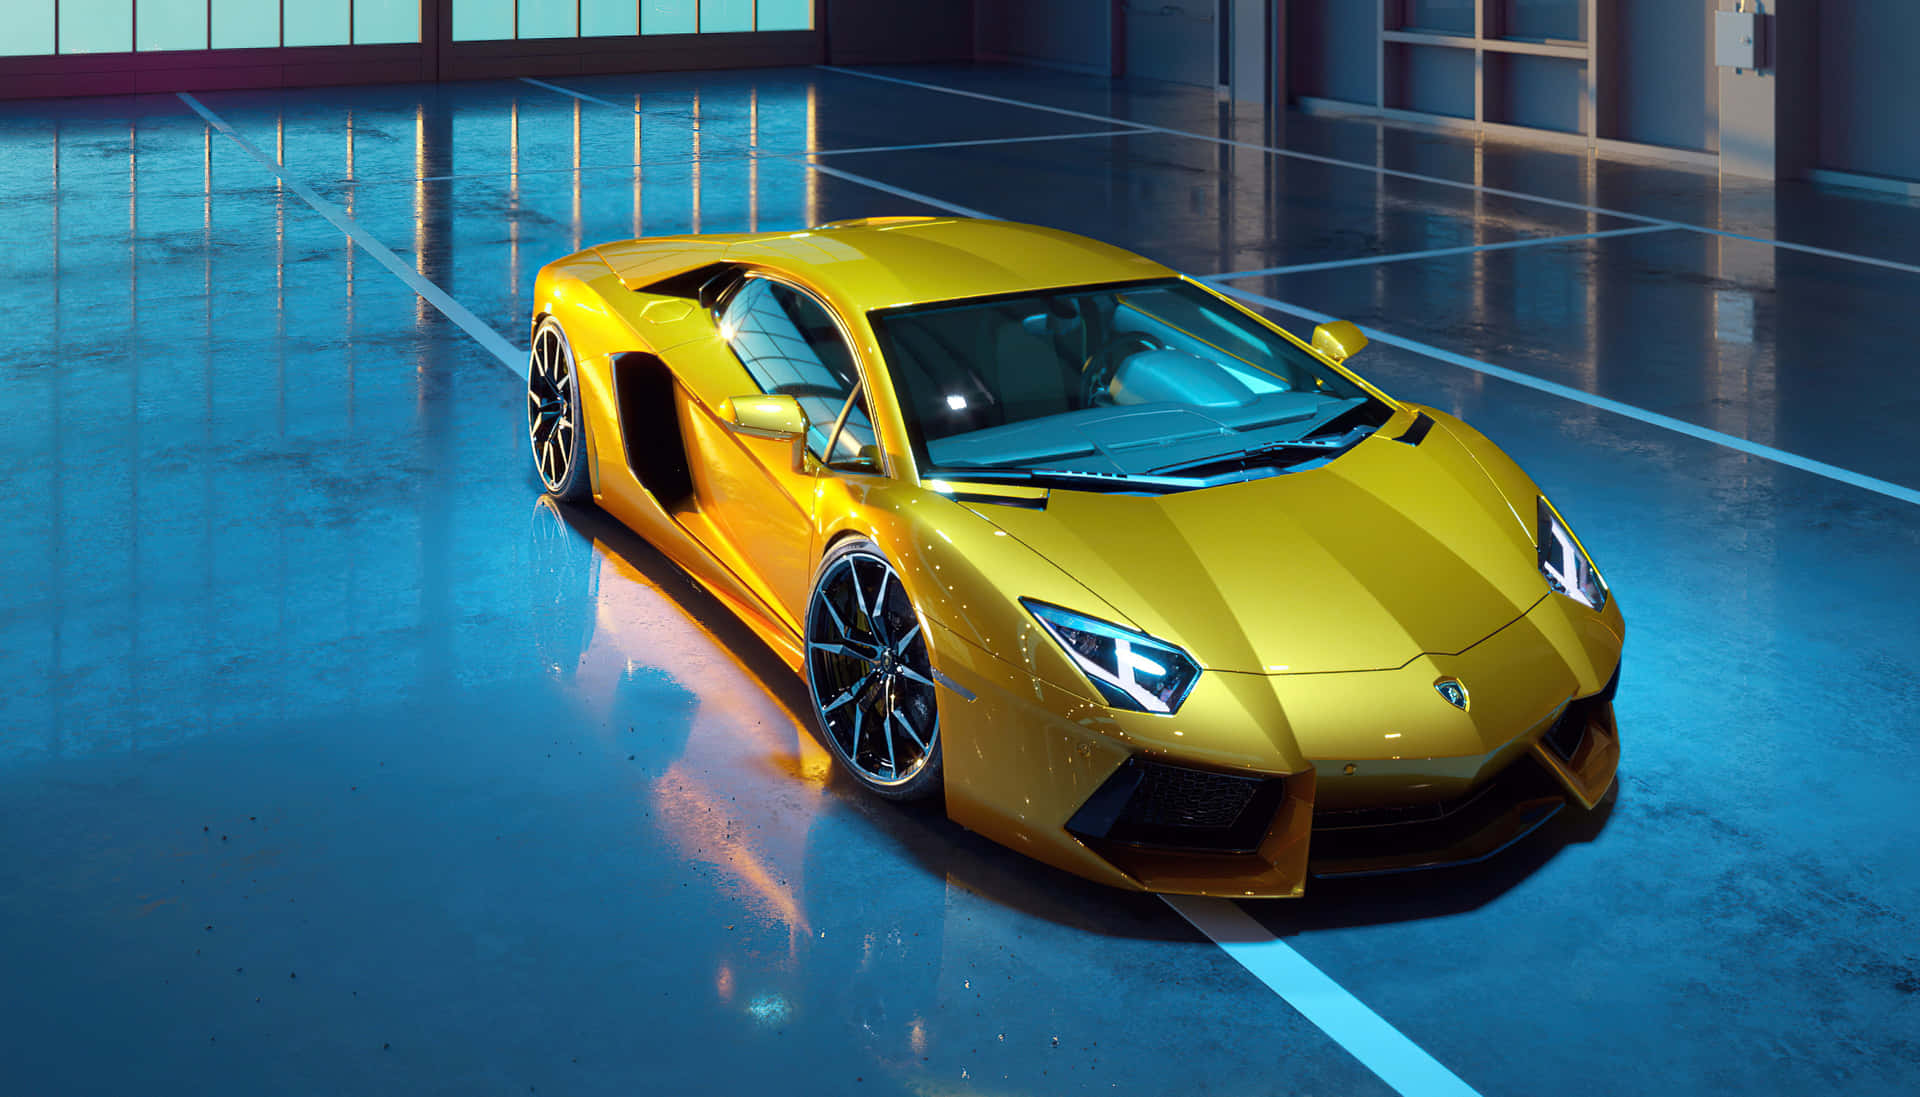 Không chỉ là một chiếc xe, Lamborghini vàng nền tảng máy tính còn là một tác phẩm nghệ thuật đầy sáng tạo và độc đáo. Hãy cùng tìm hiểu về sự kết hợp hoàn hảo giữa công nghệ và xe hơi.